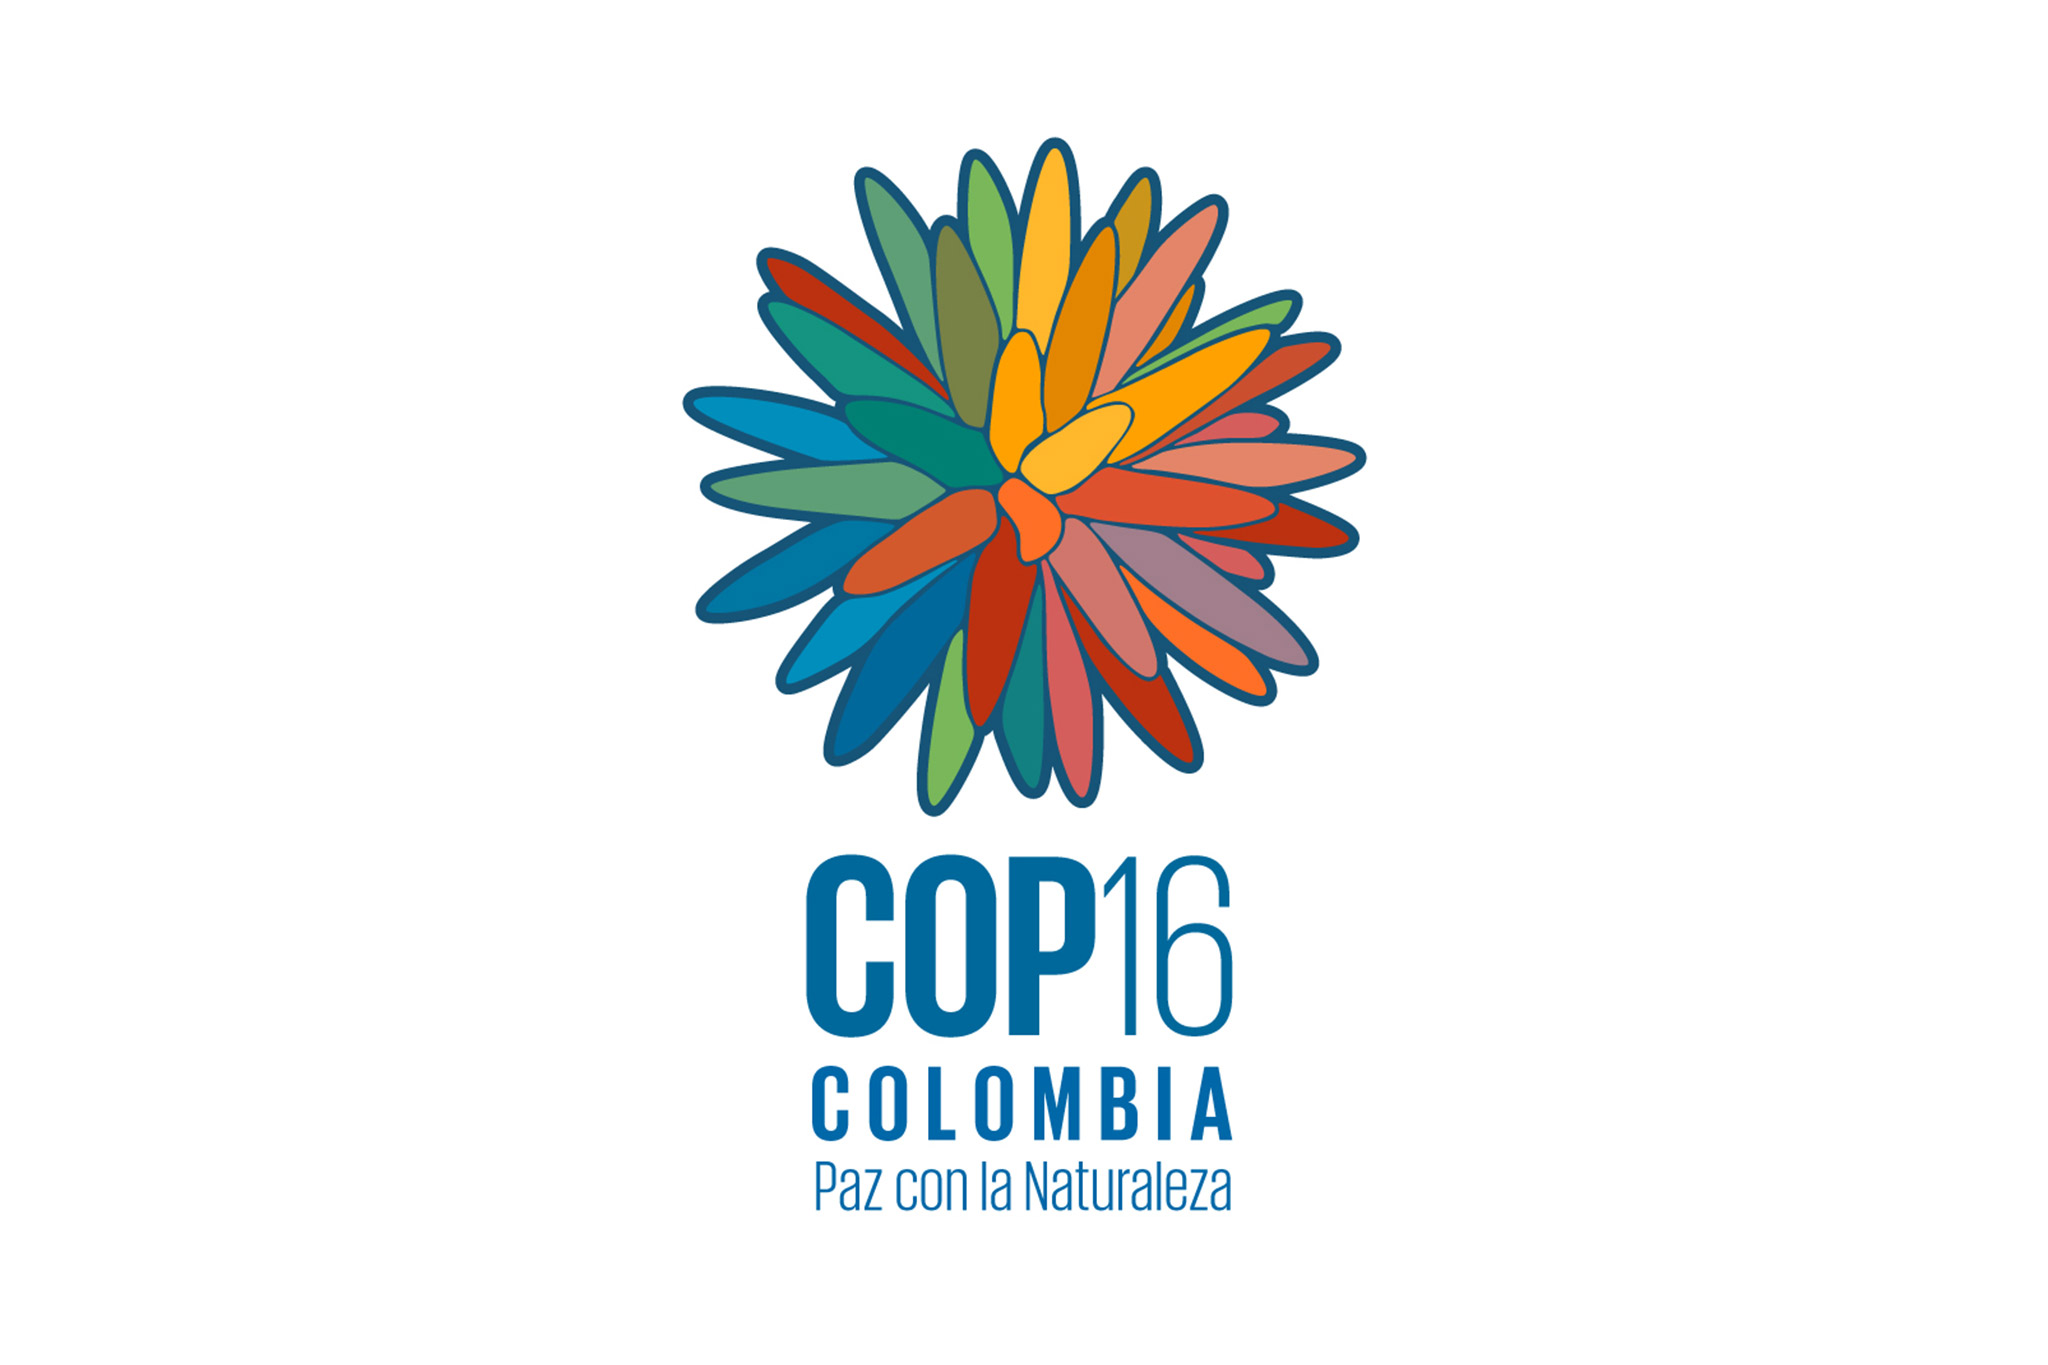 Colombia presenta al mundo la imagen de la COP16 ‘Paz con la Naturaleza’